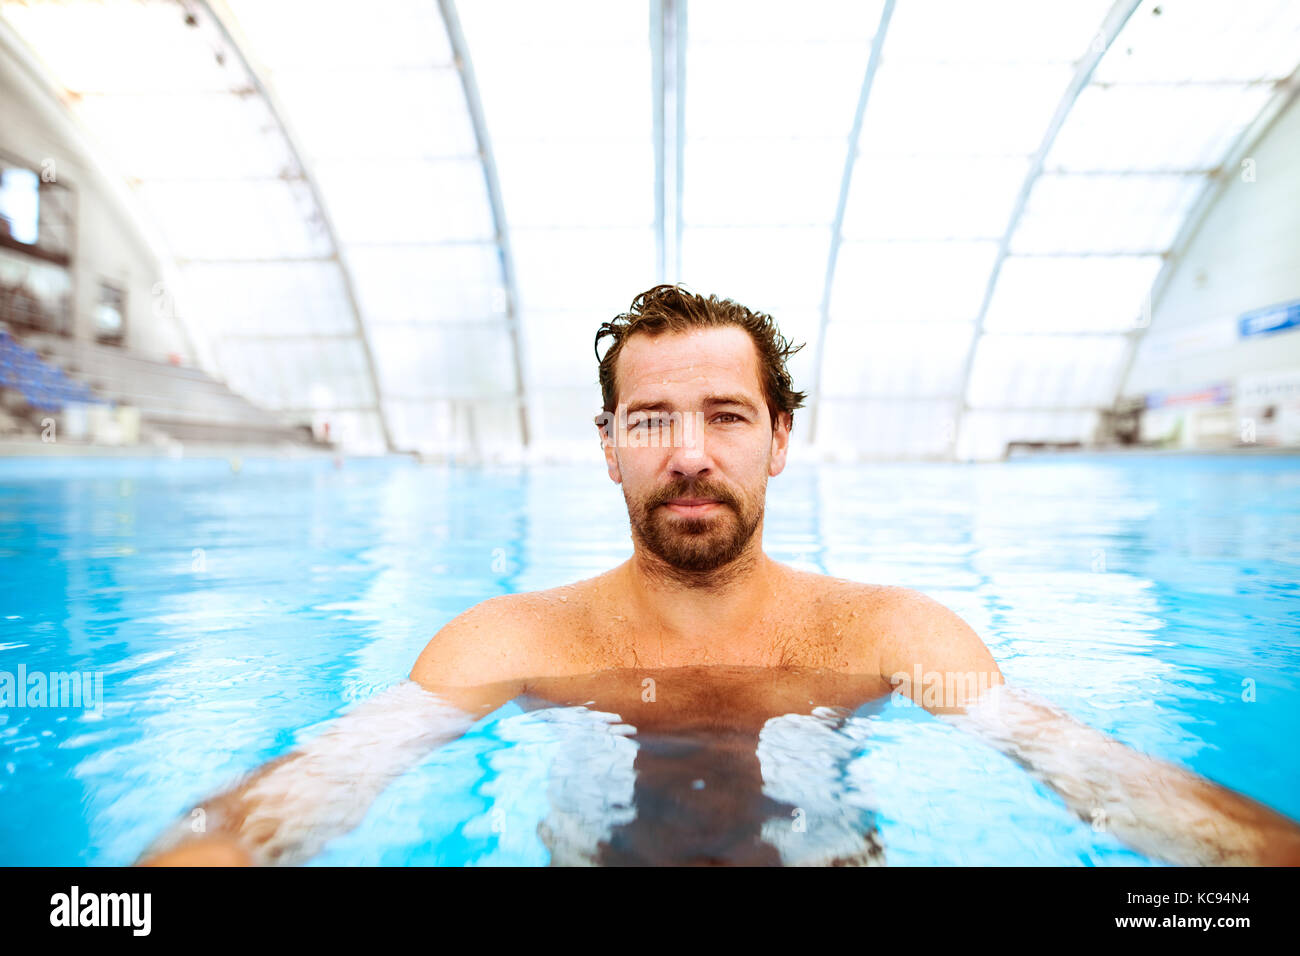 Haciendo ejercicio piscina fotografías e imágenes de alta resolución -  Página 2 - Alamy